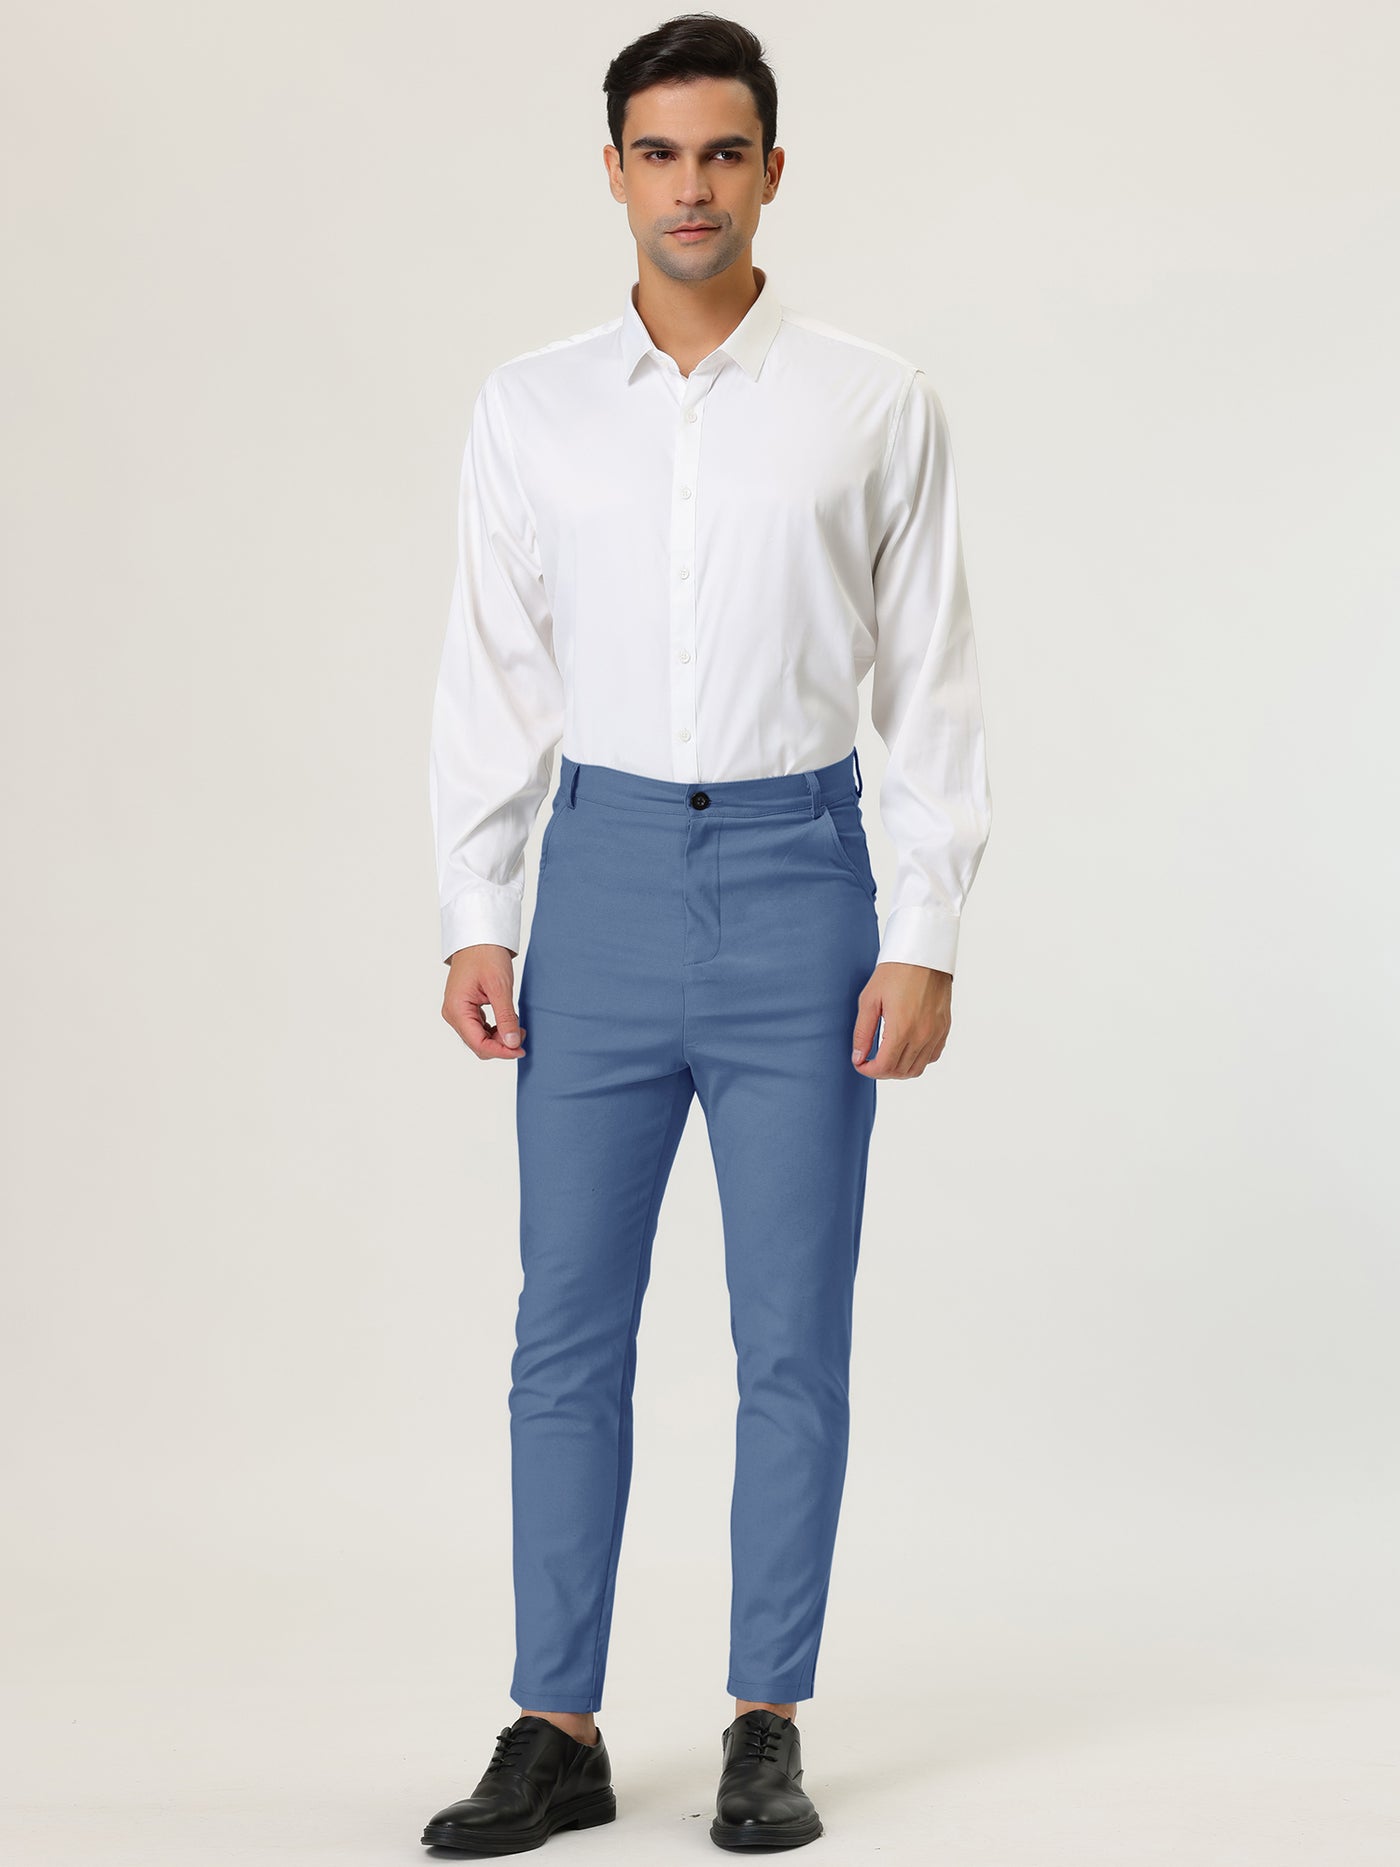 Bublédon Men's Skinny Trousers Solid Color Flat Front Pencil Dress Pants